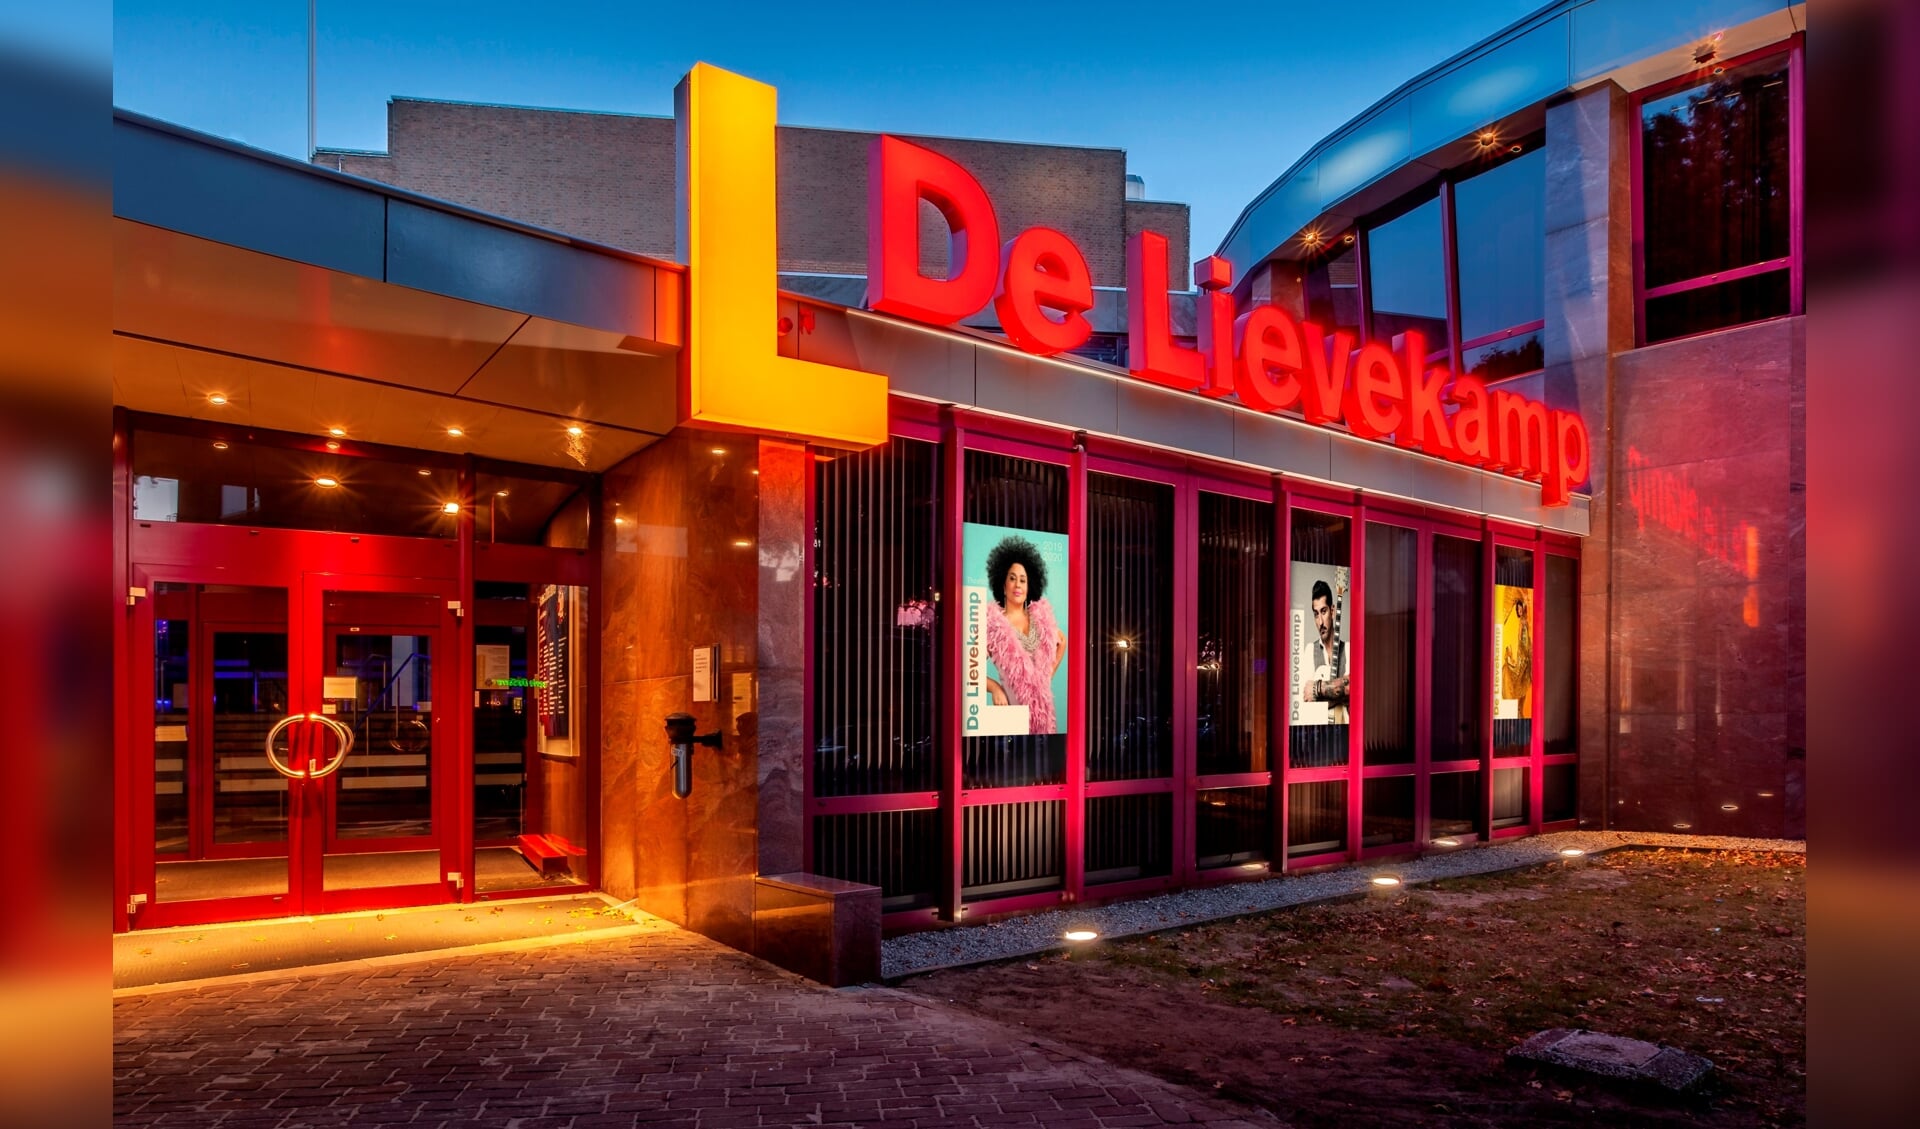 Theater De Lievekamp.